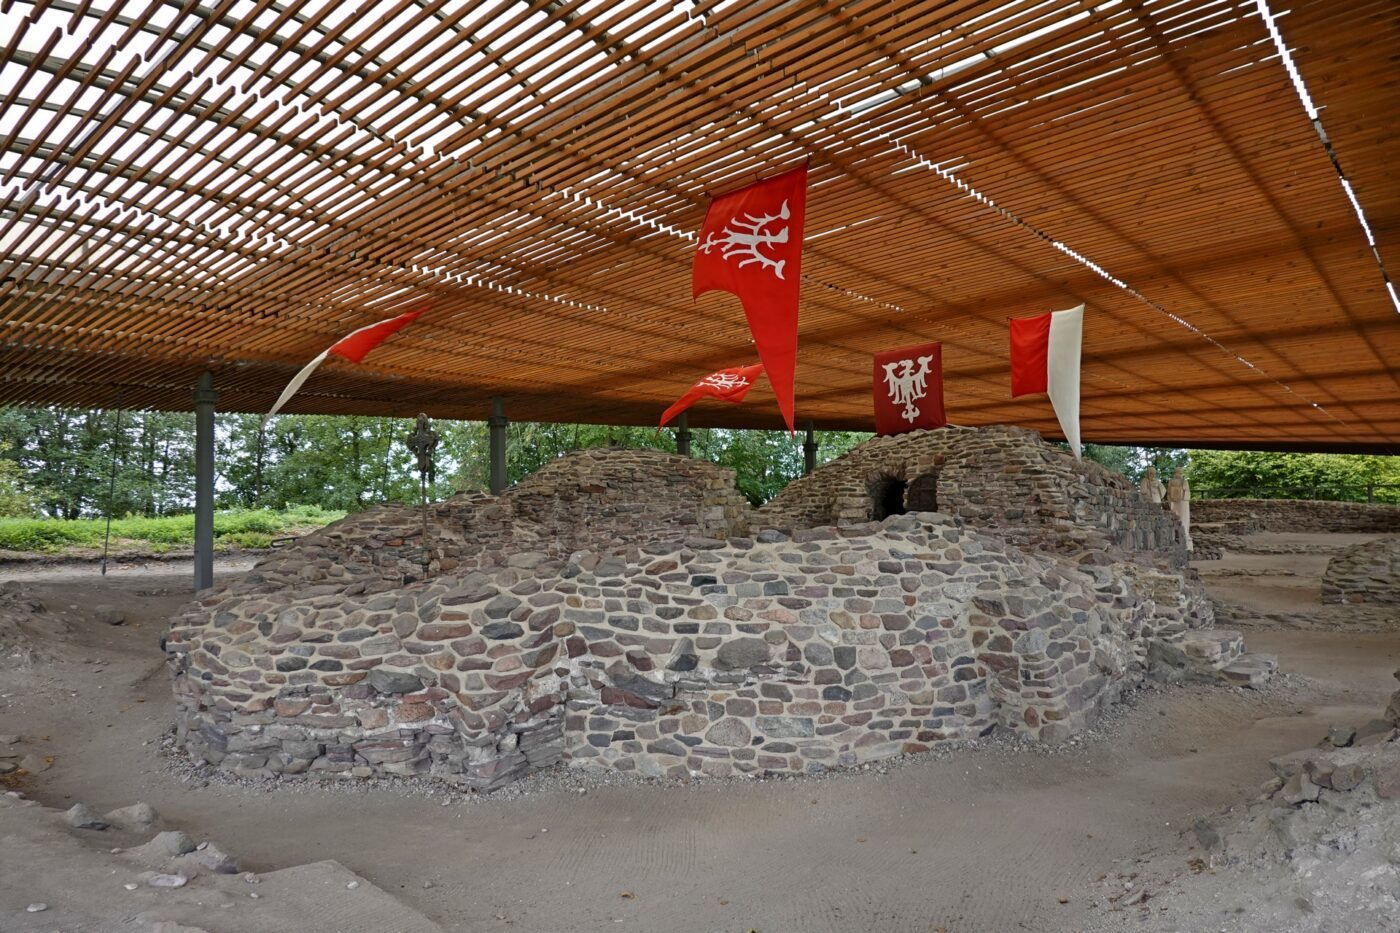 szlak piastowski atrakcje – ruiny Palatium z X wieku na Ostrowie Lednickim